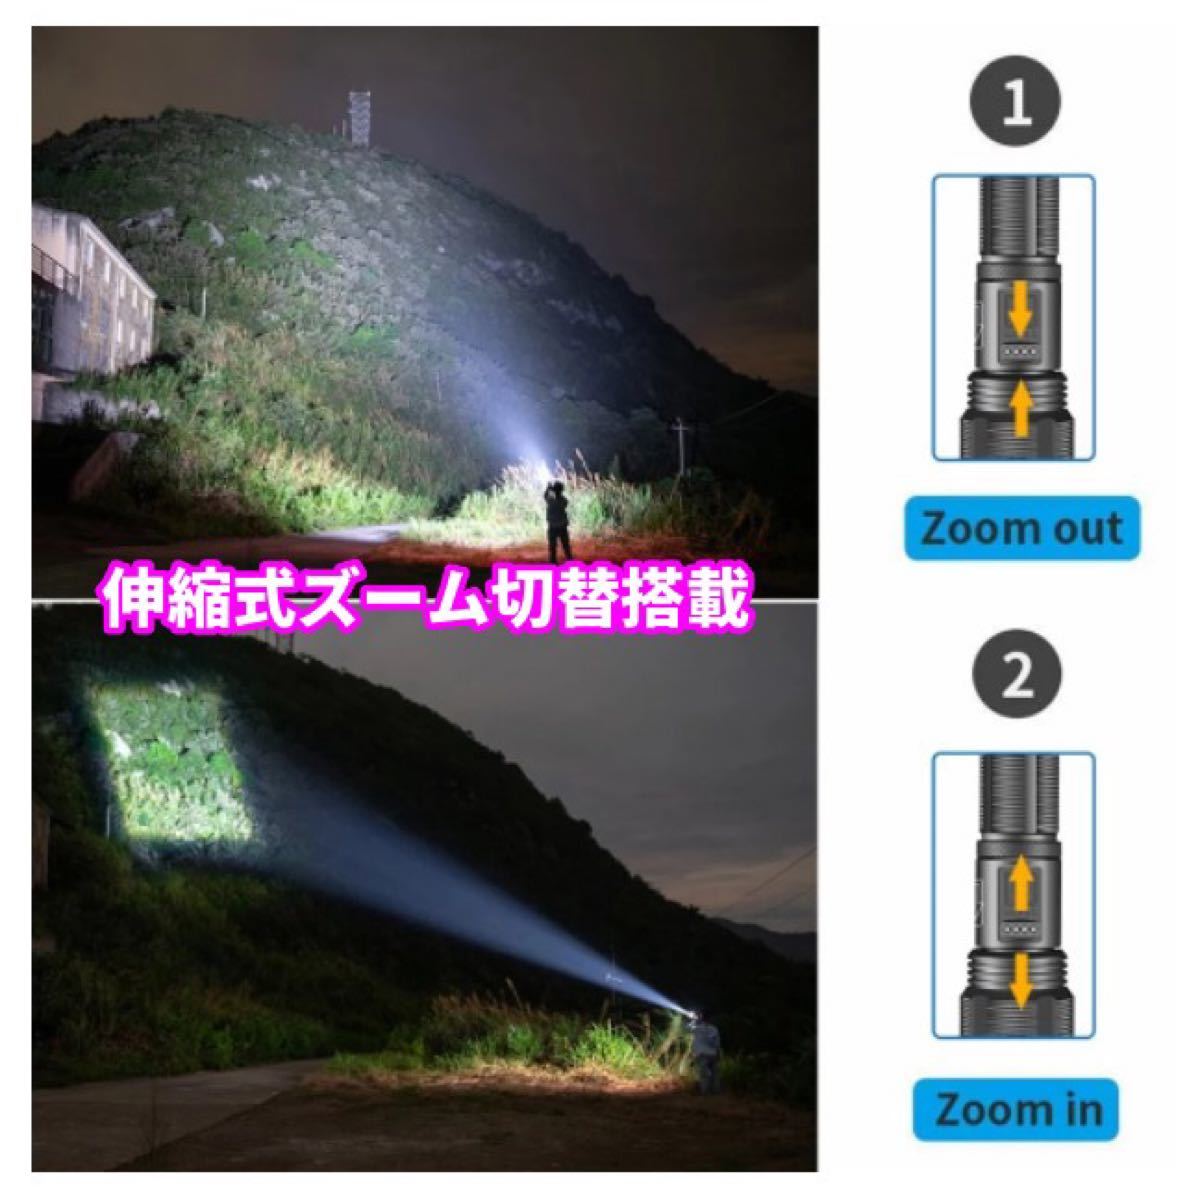 ★ 超高輝度 ★ LED 懐中電灯 ズームライト フラッシュライト 5つの照射モード 多機能 最大照射 500m 防災 アウトドア